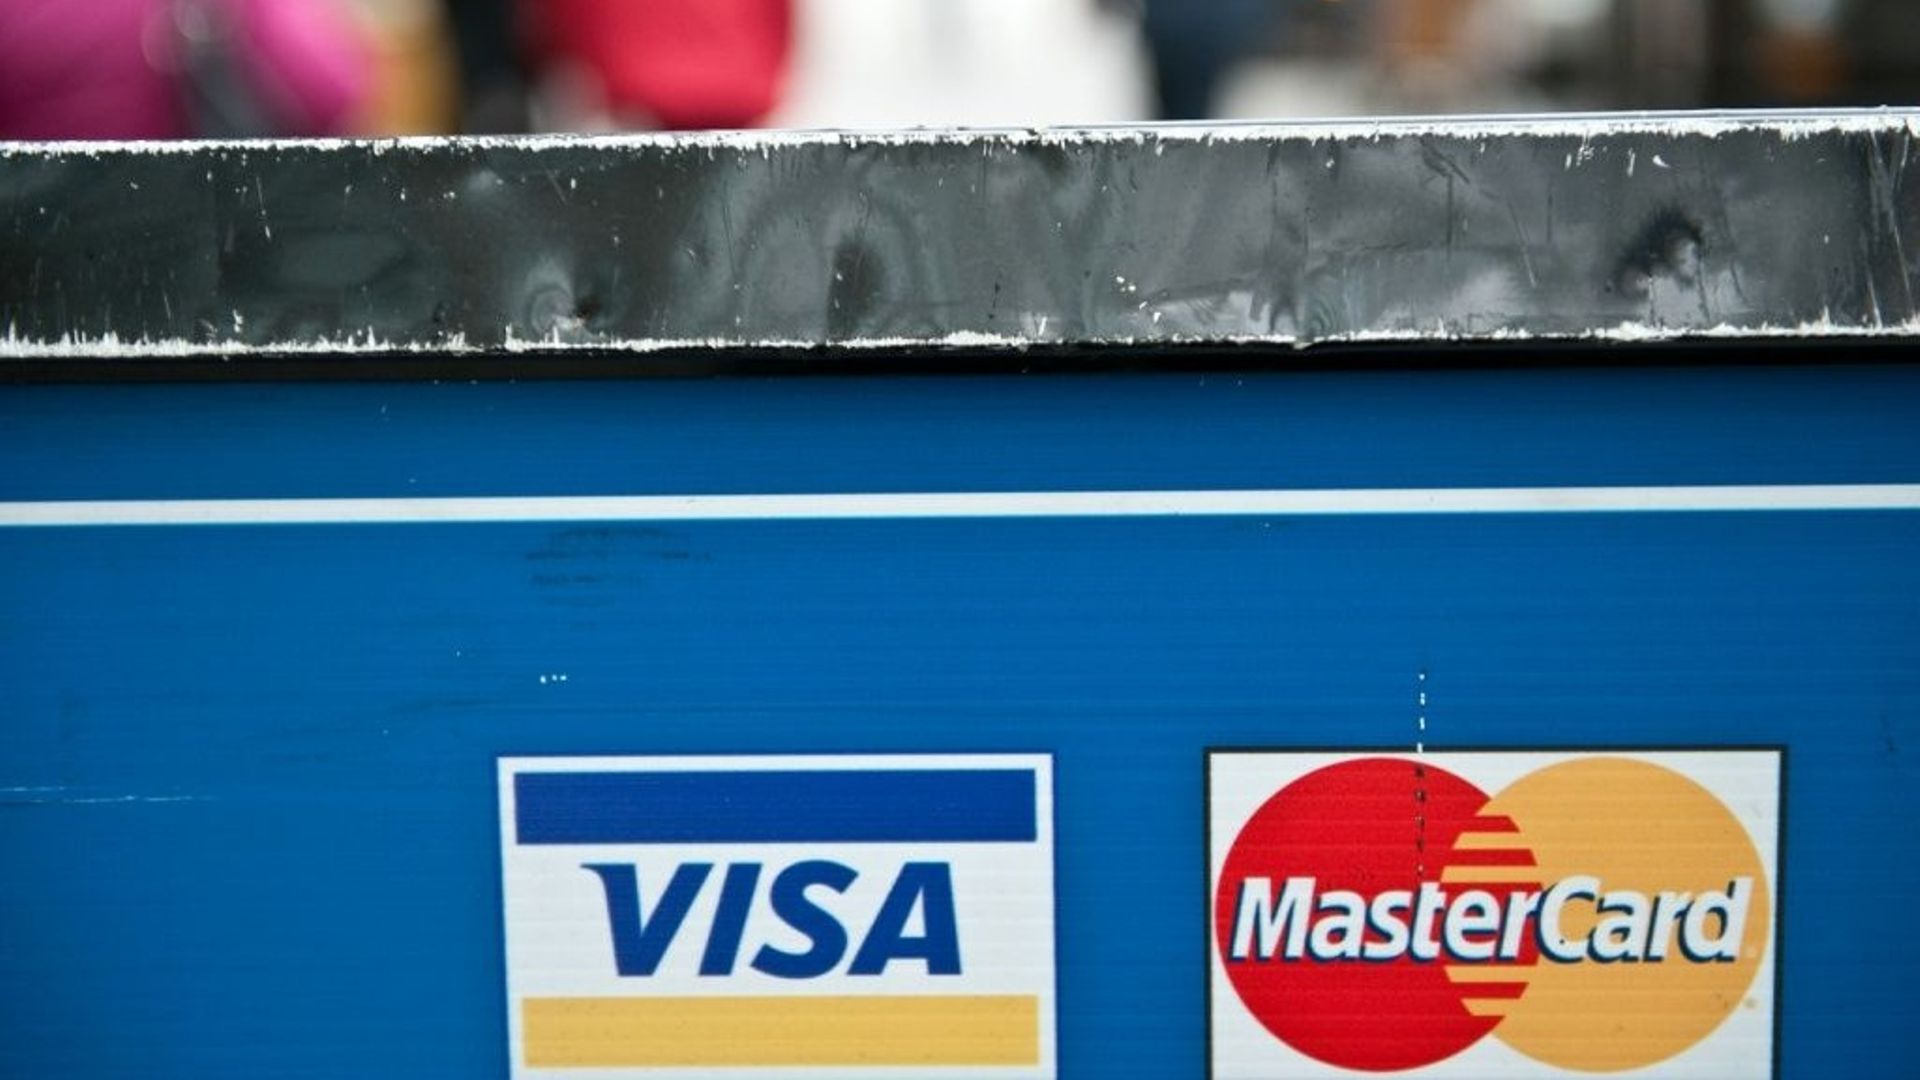 Les émetteurs américains de cartes de paiements Visa et Mastercard ont indiqué avoir pris des mesures pour mettre en oeuvre les sanctions imposées à la Russie après l'invasion de l'Ukraine, empêchant des banques russes d'utiliser leur réseau